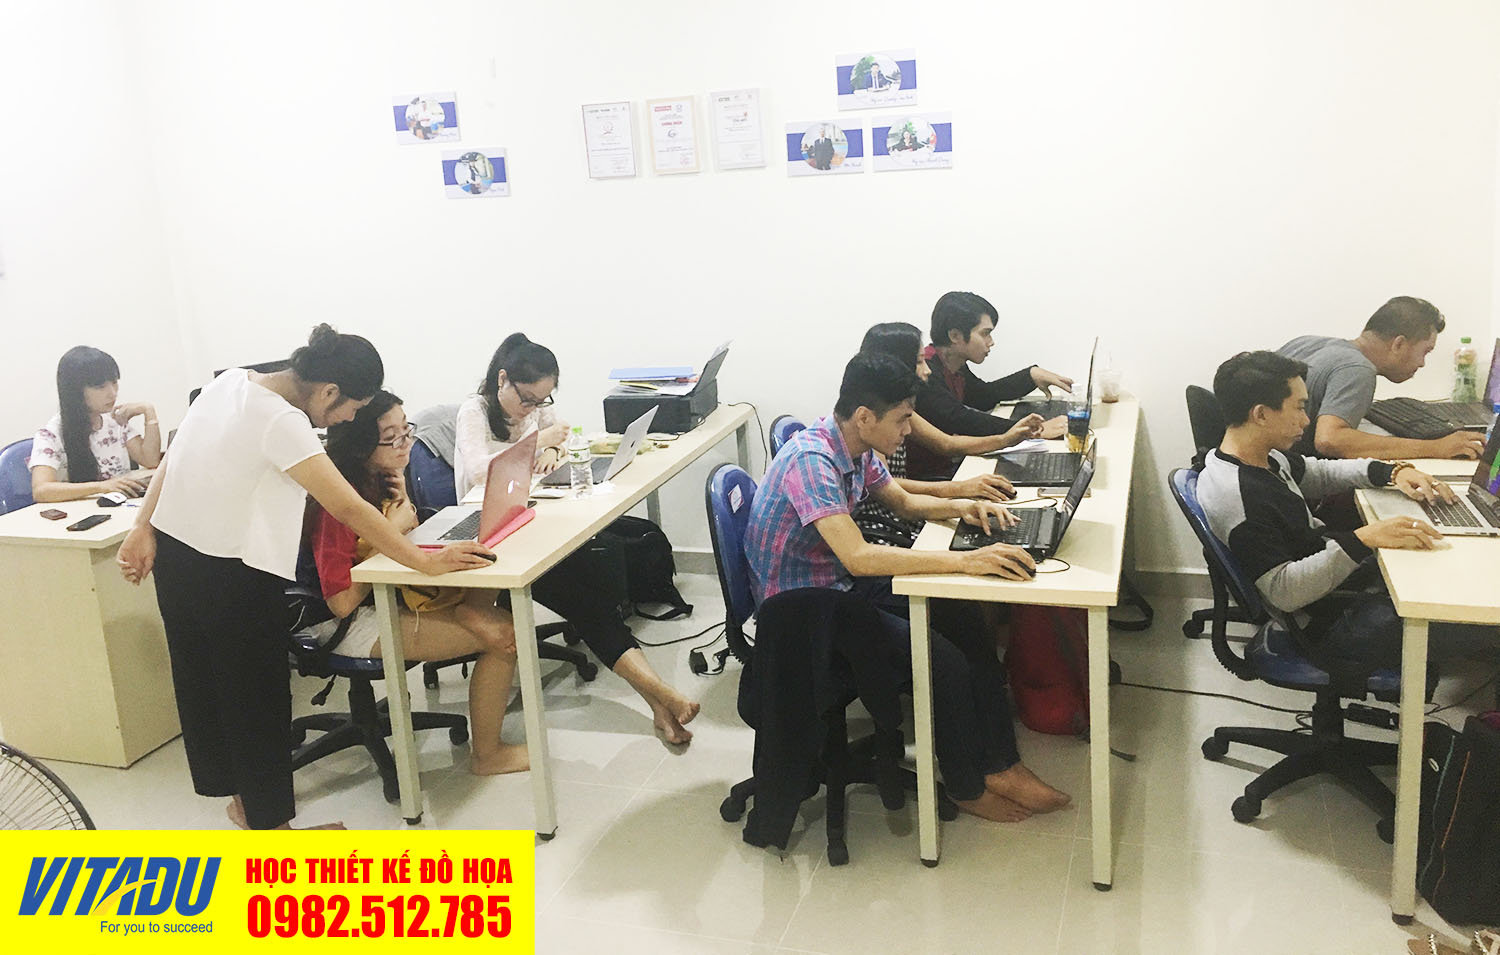 Lớp học Photoshop cơ bản ở quận Tân Bình